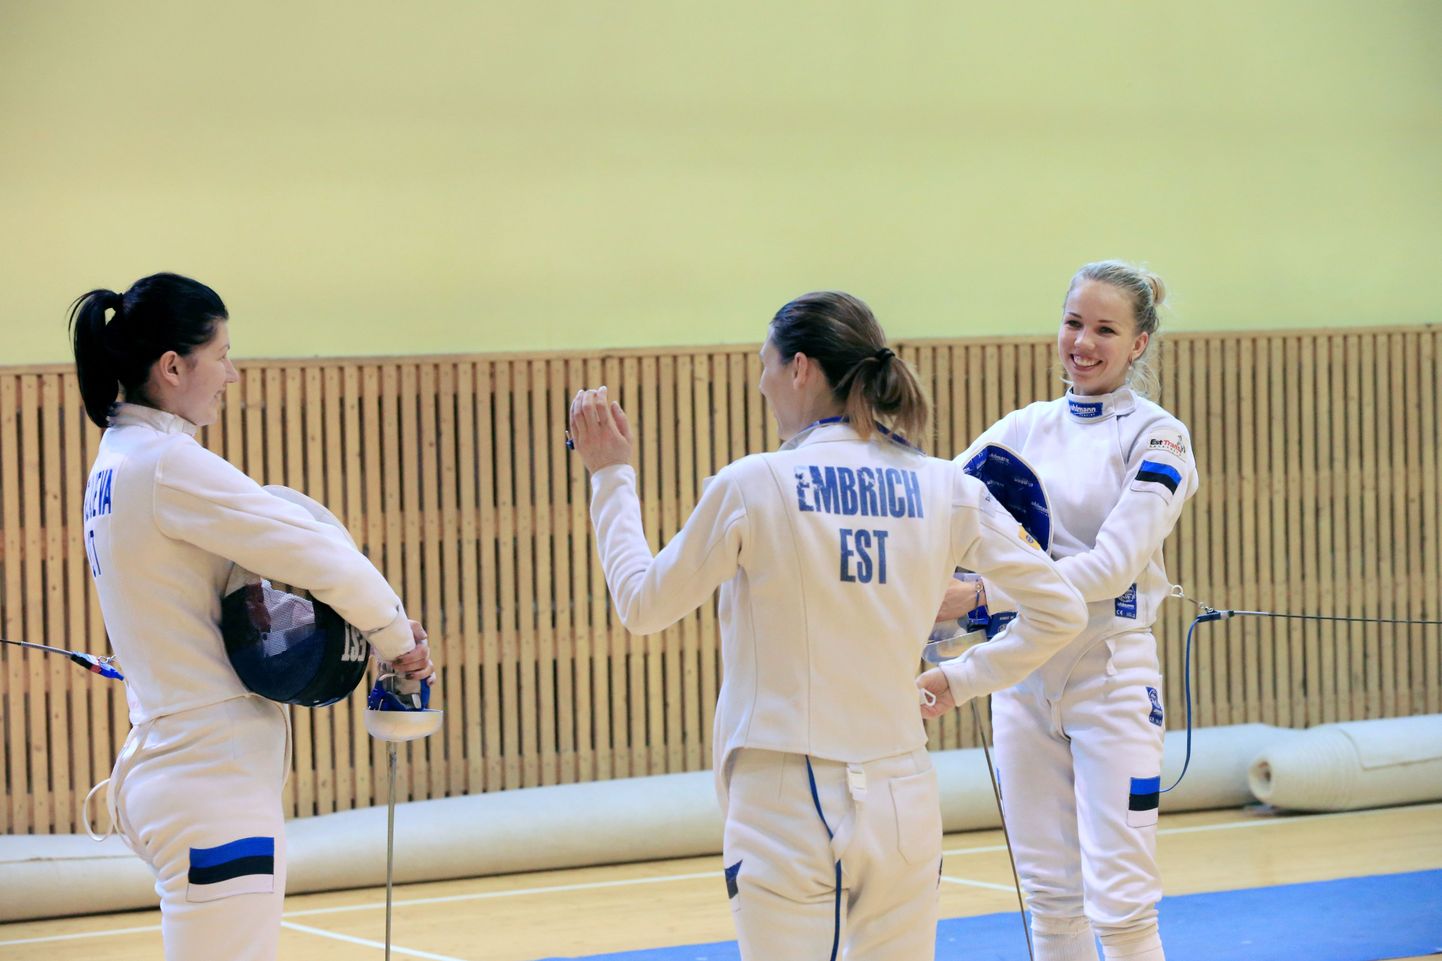 Слева-направо: Юлия Беляева, Ирина Эмбрих и Эрика Кирпу.